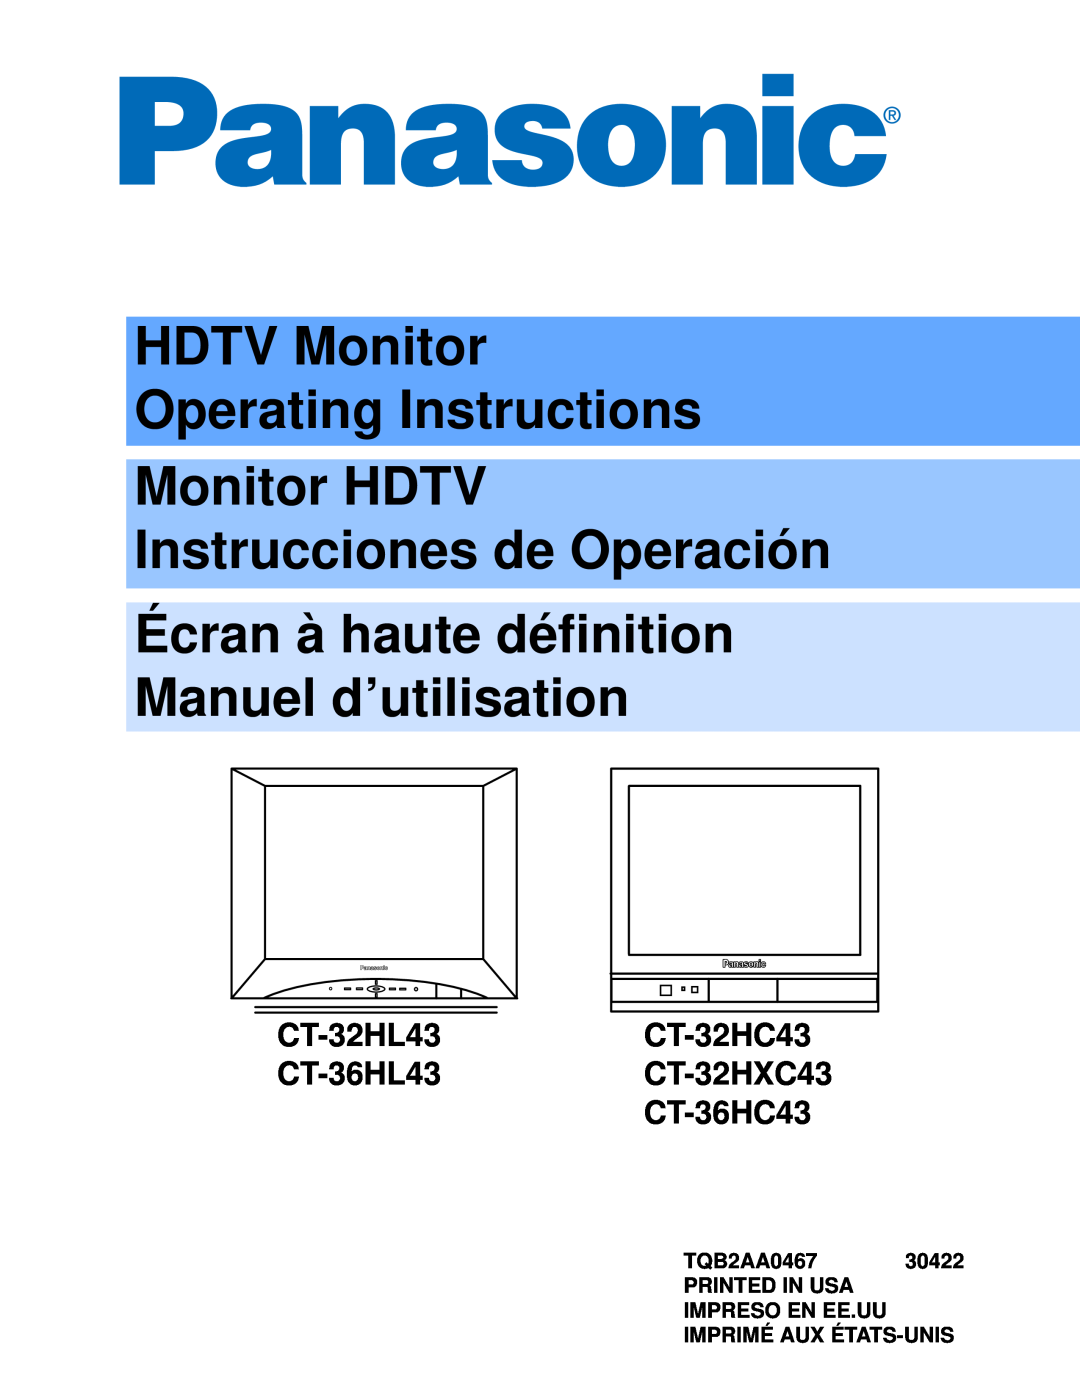 Panasonic CT 32HL43 manuel dutilisation HDTV Monitor Operating Instructions, Monitor HDTV Instrucciones de Operación 